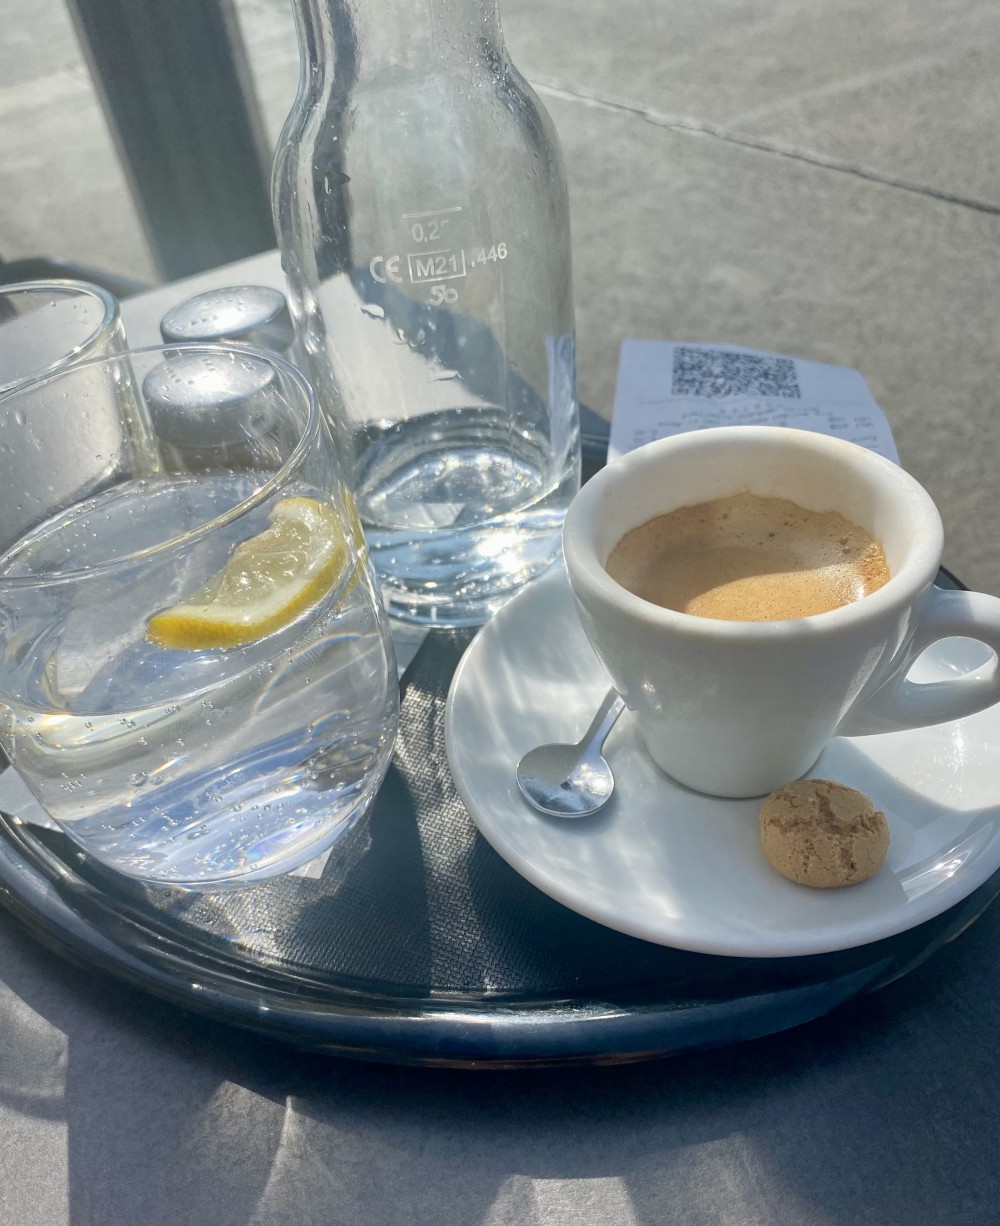 Der Espresso… schöne Crema und kräftig… das Soda kommt als SoZi daher - so ... - Caffehaus - Wien